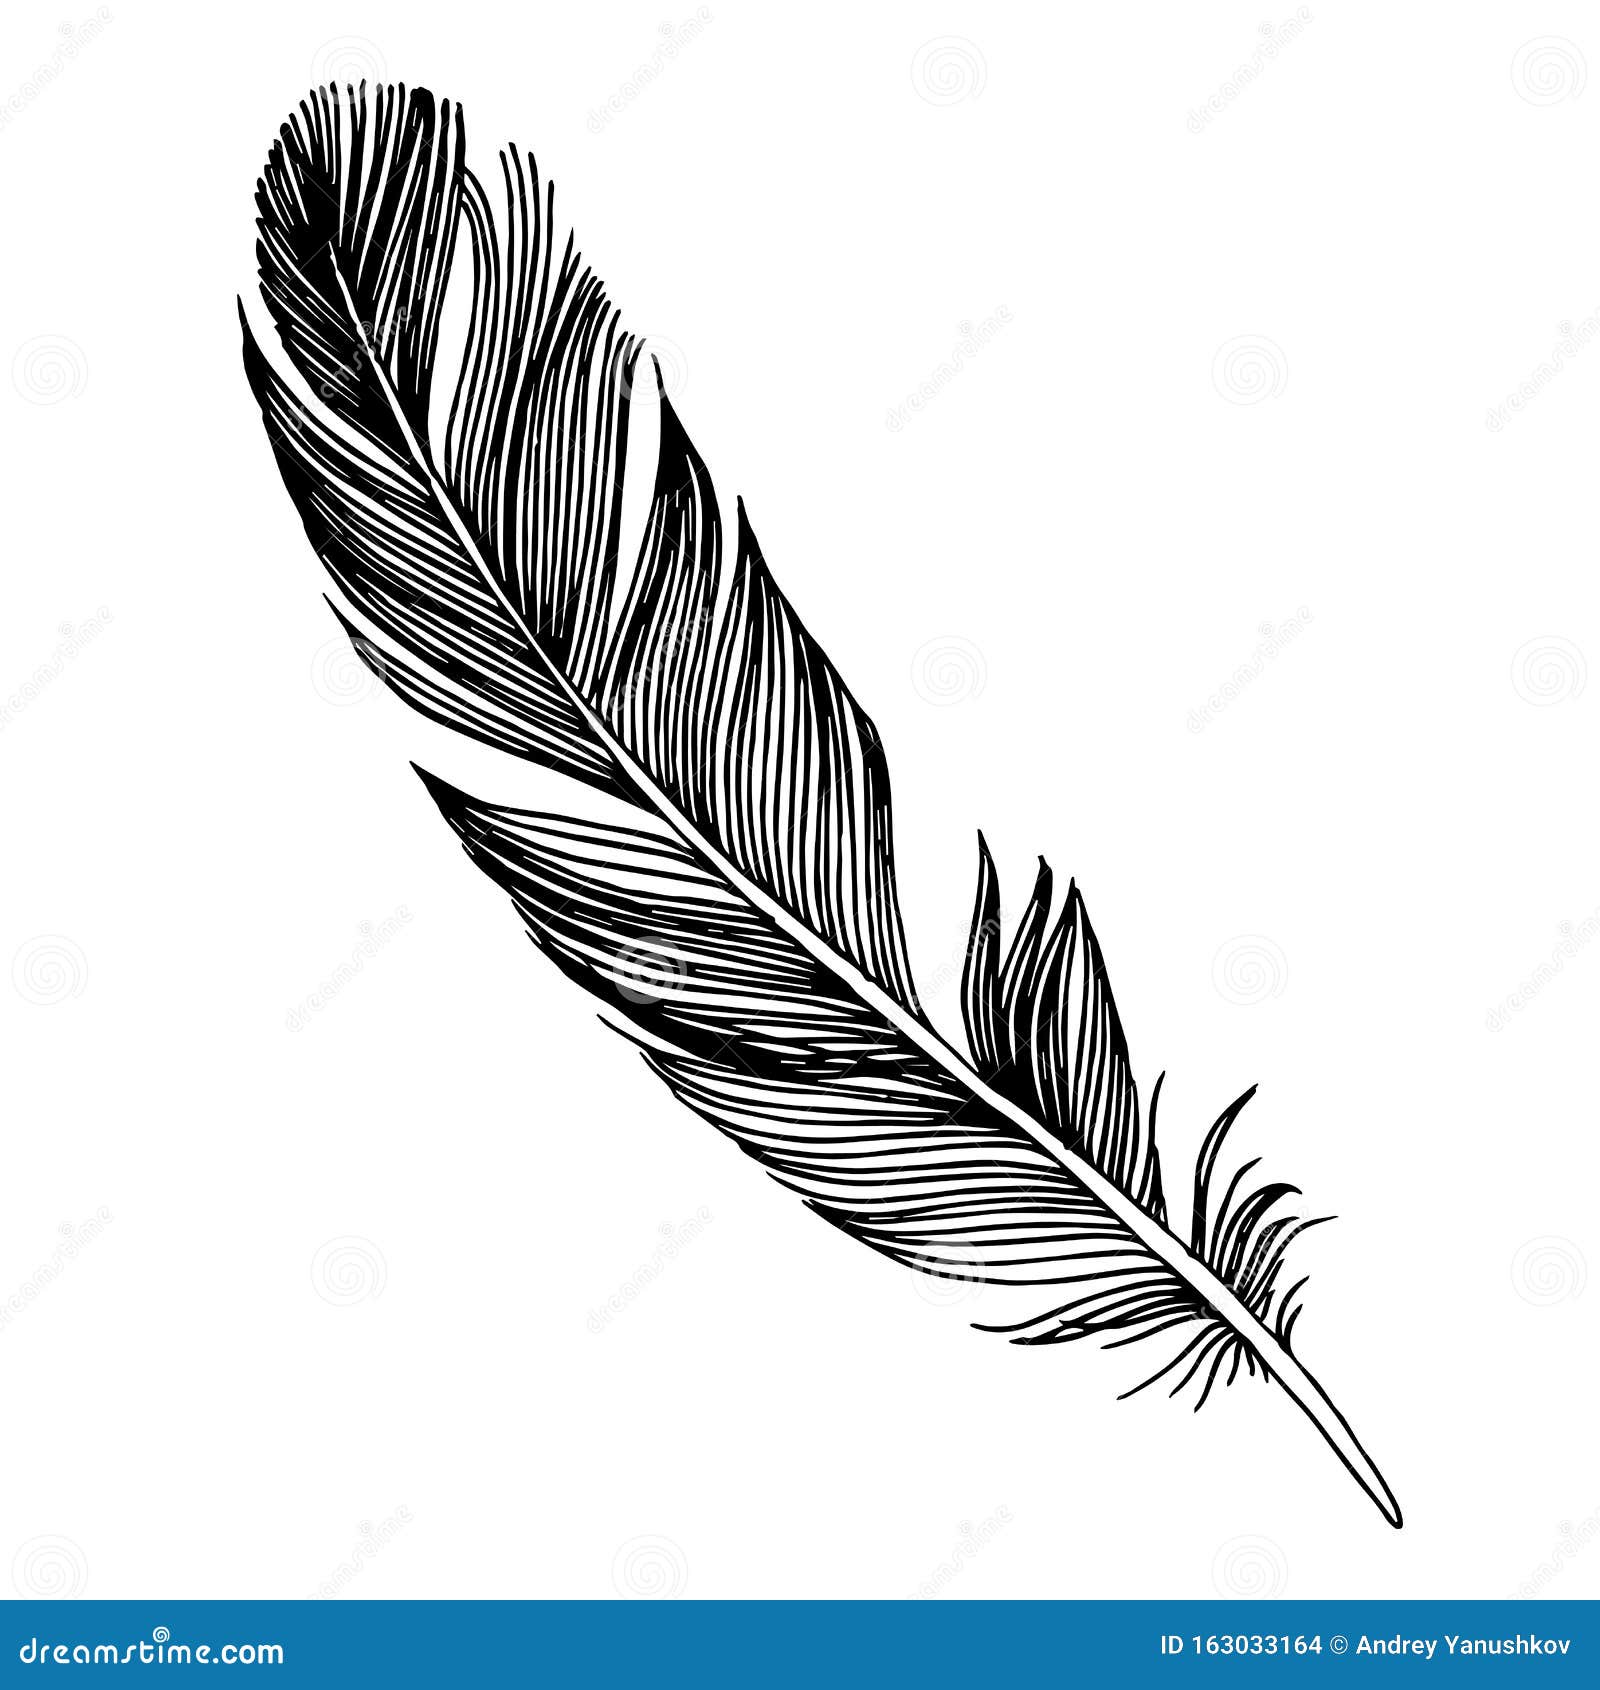 Sticker Black bird feather on white background 